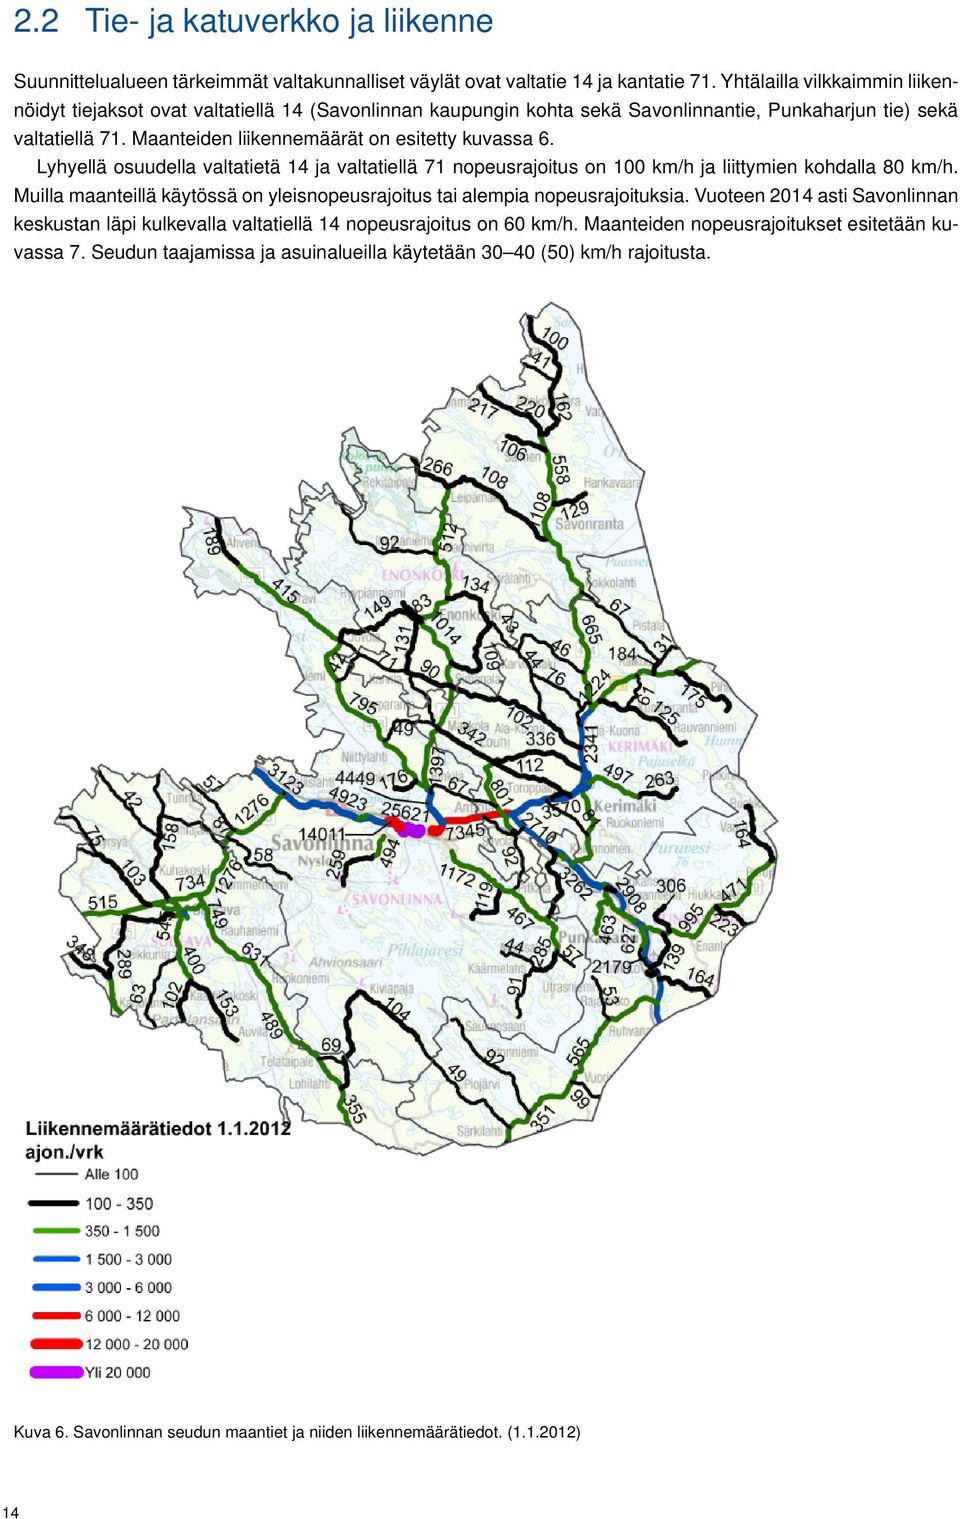 Maanteiden liikennemäärät on esitetty kuvassa 6. Lyhyellä osuudella valtatietä 14 ja valtatiellä 71 nopeusrajoitus on 100 km/h ja liittymien kohdalla 80 km/h.